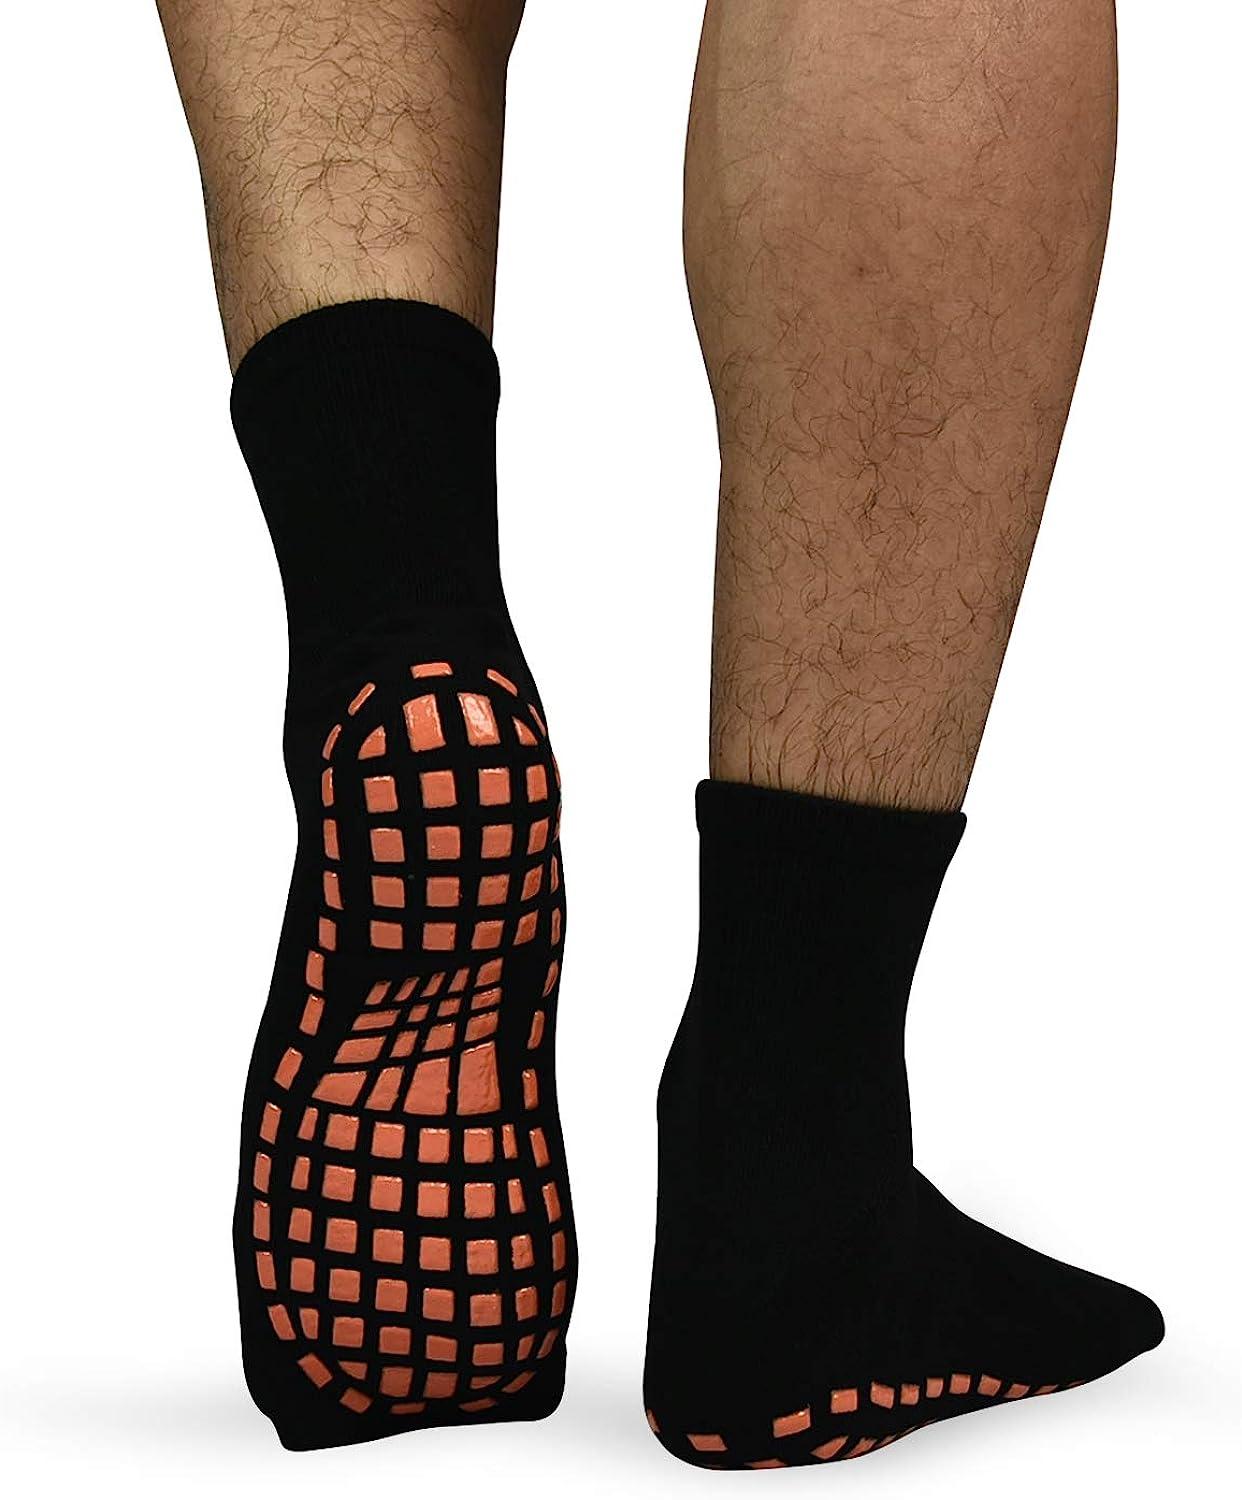 Non Skid/Slip Socks - Hospital Socks - Slipper Socks for Women and Men -  Black (One Size) : : Clothing & Accessories